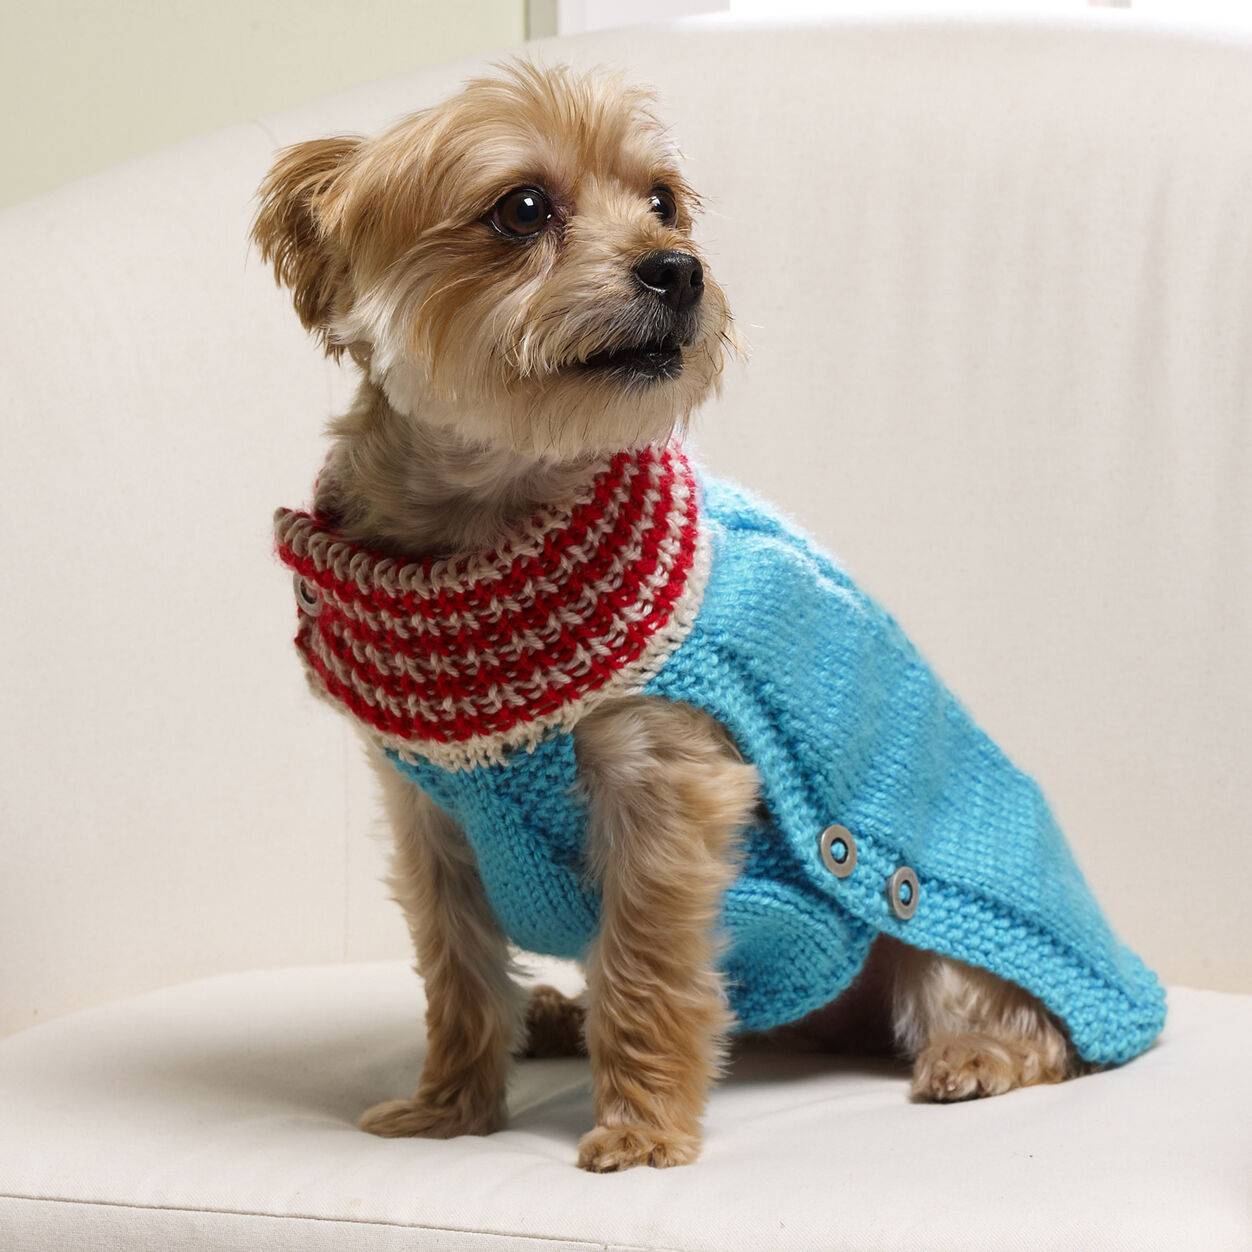 Как связать собаке свитер спицами (для начинающих): особенности вязания свитерка для собачки на спицах